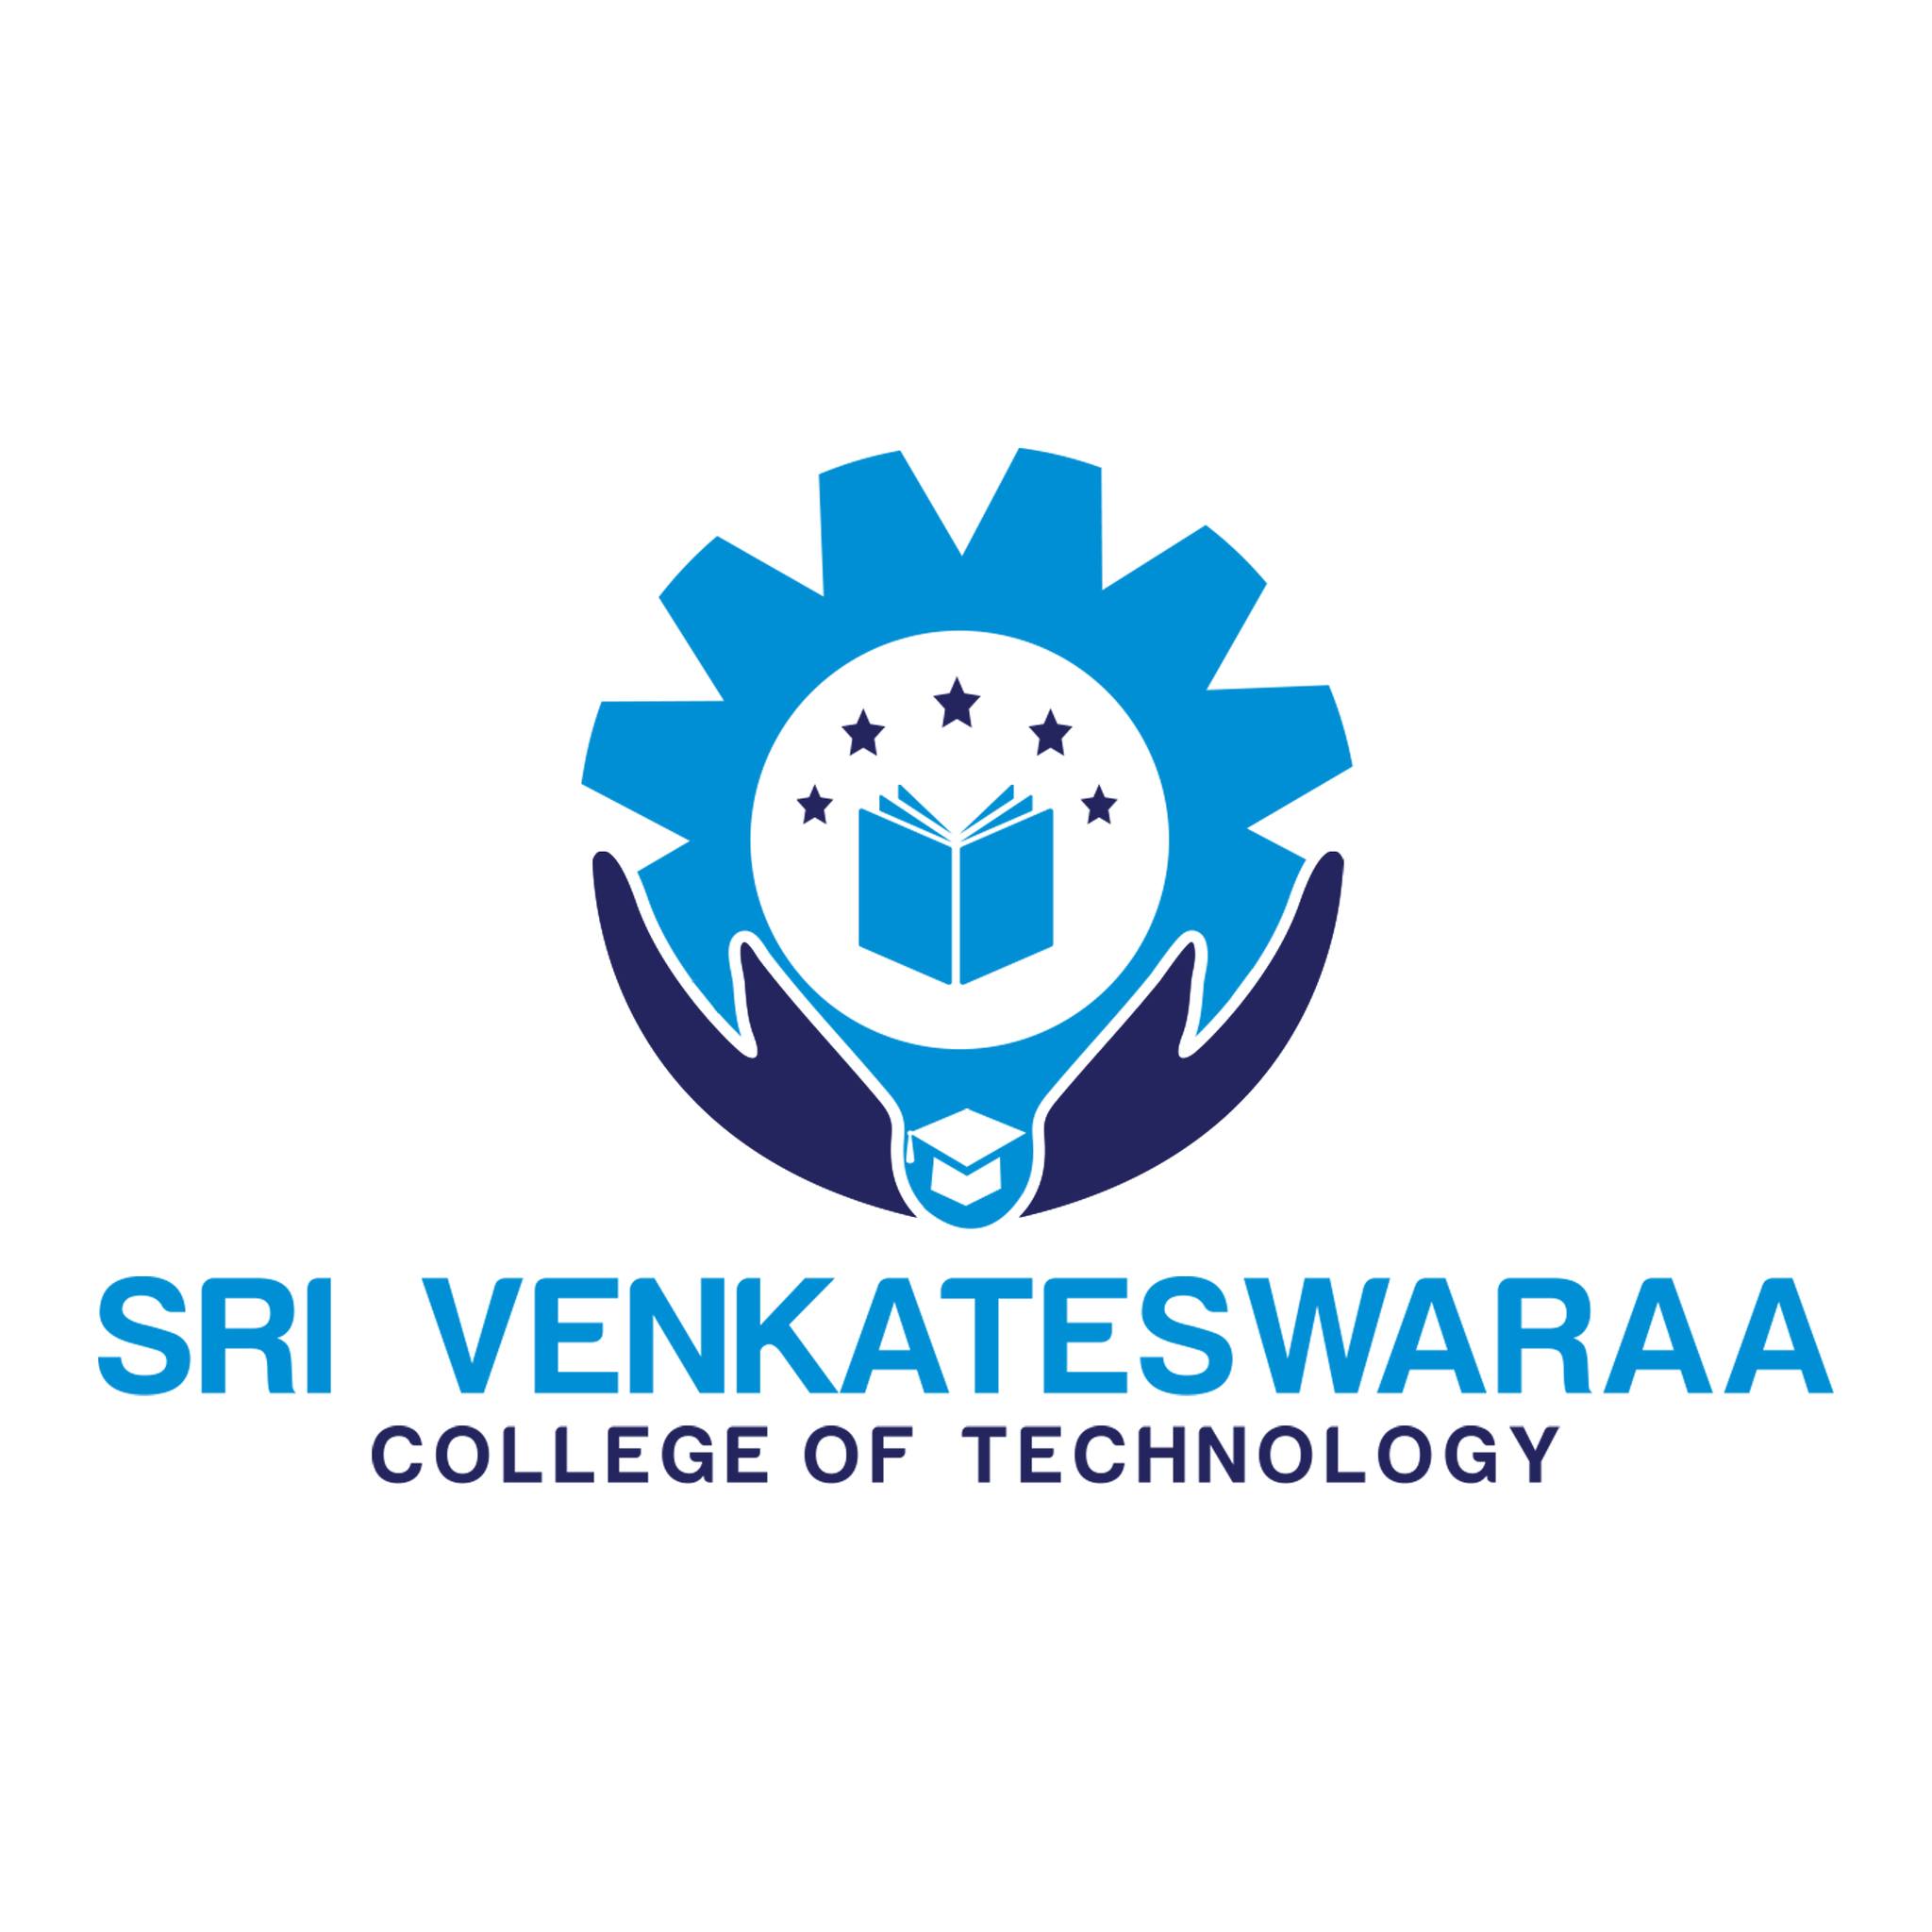 Sri Venkateswaraa College of Technology in Kanchipuram|Colleges|Education